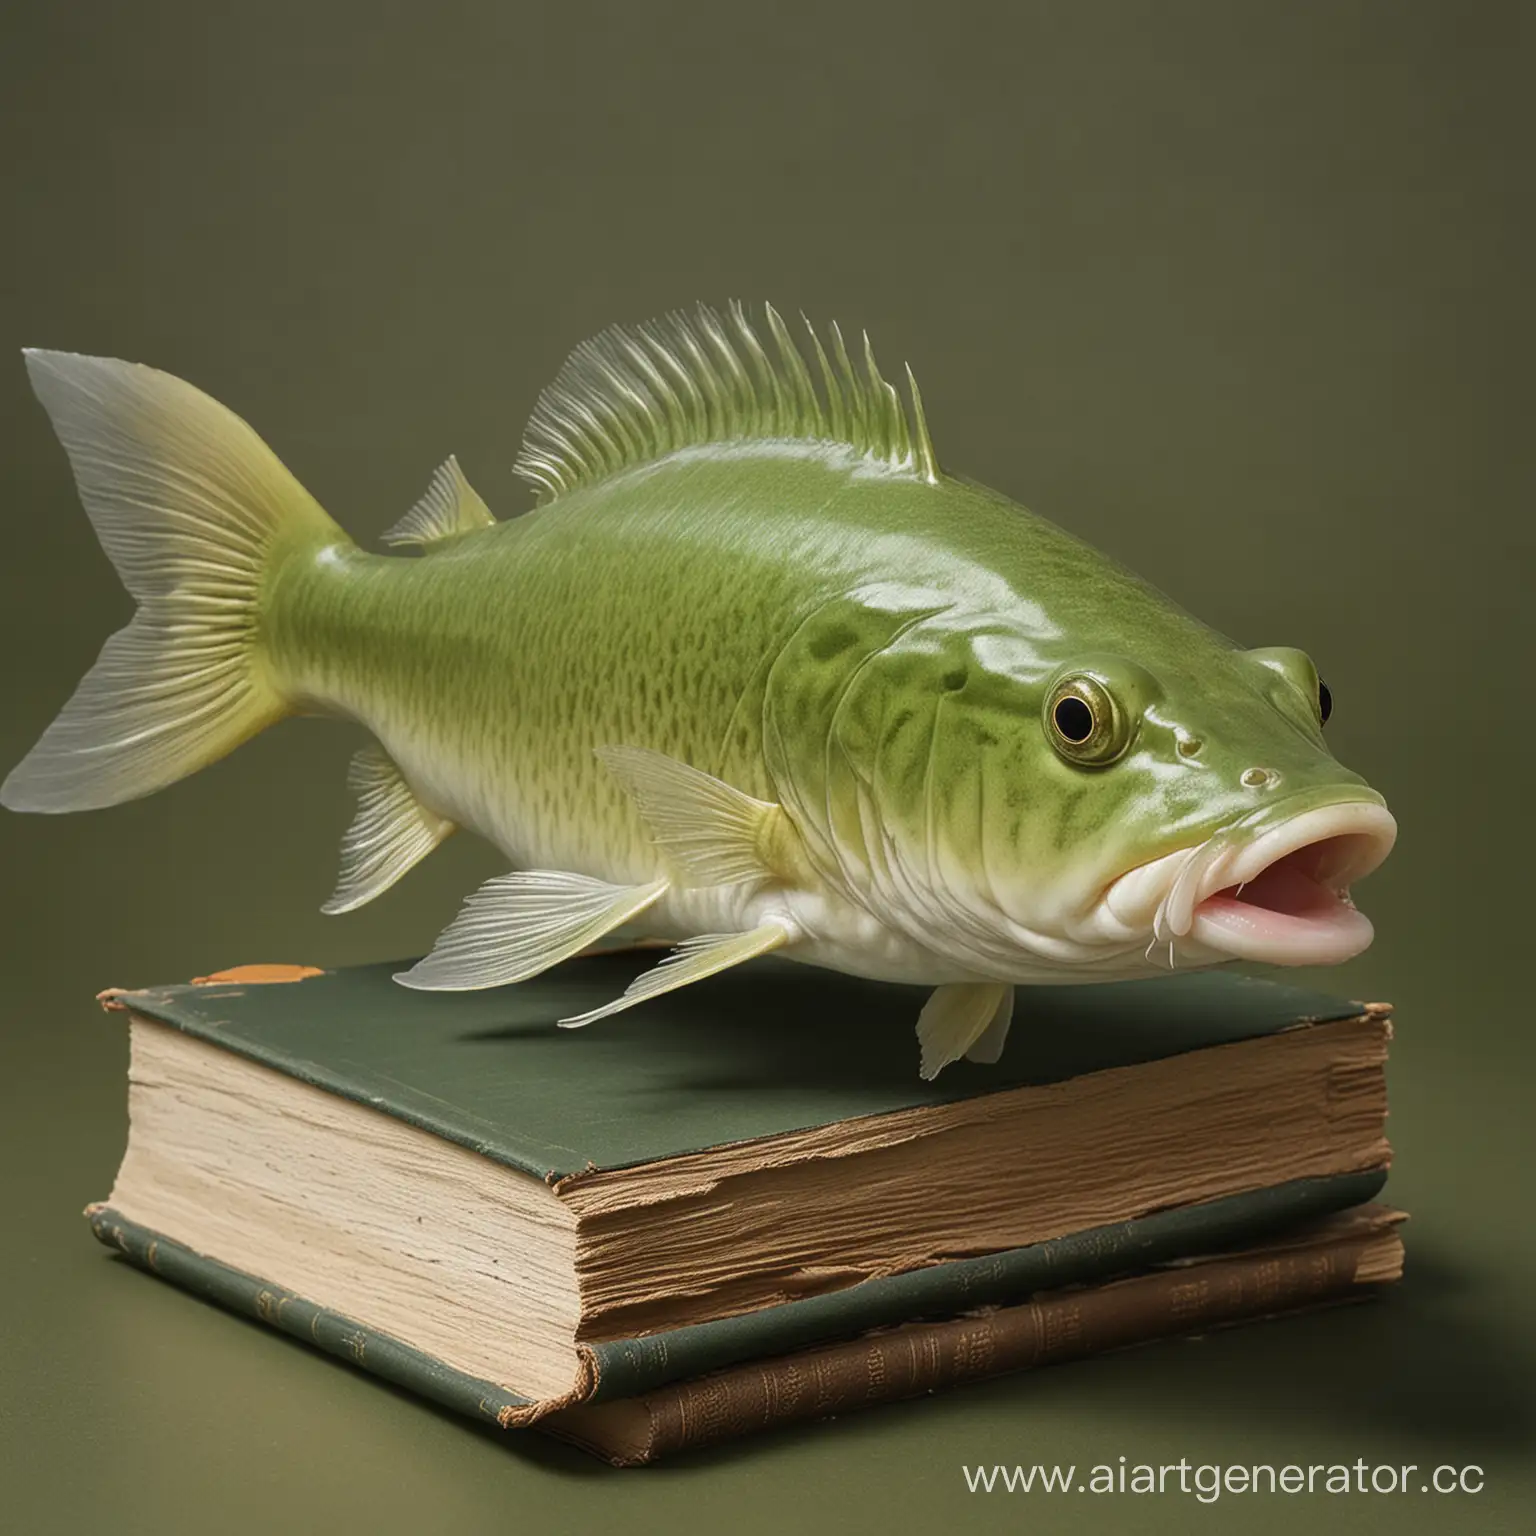 BlondishHaired-Green-Catfish-Swimming-Among-Books